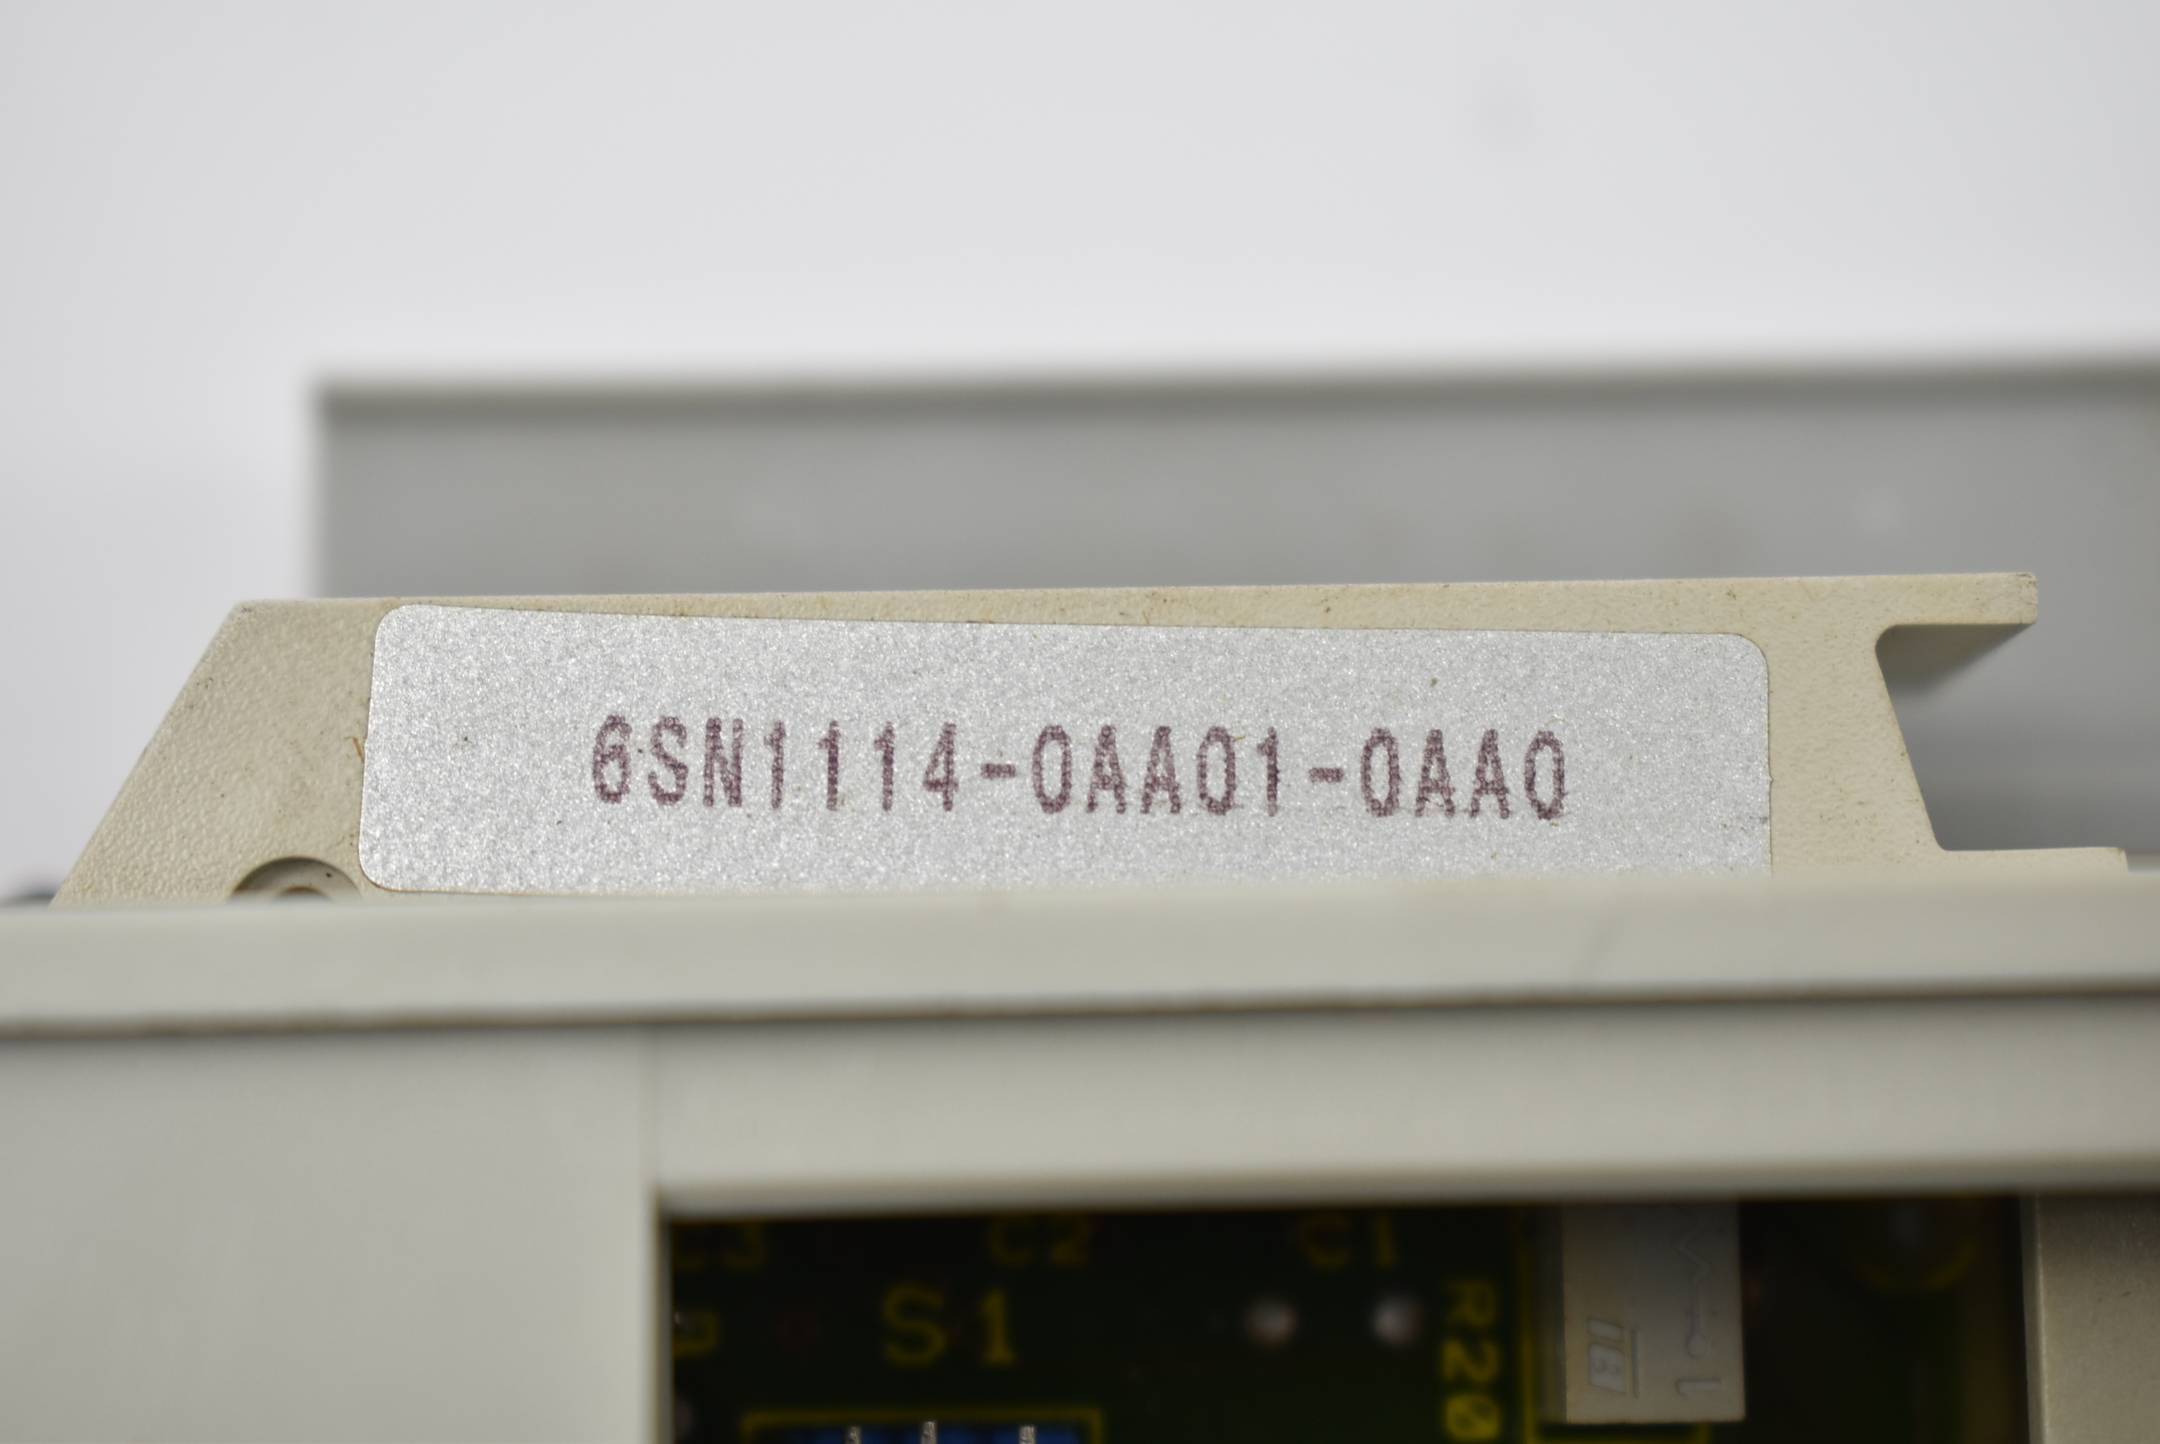 Siemens simodrive Regeleinschub verm. 6SN1118-0AA11-0AA0 + 6SN1114-0AA01-0AA0